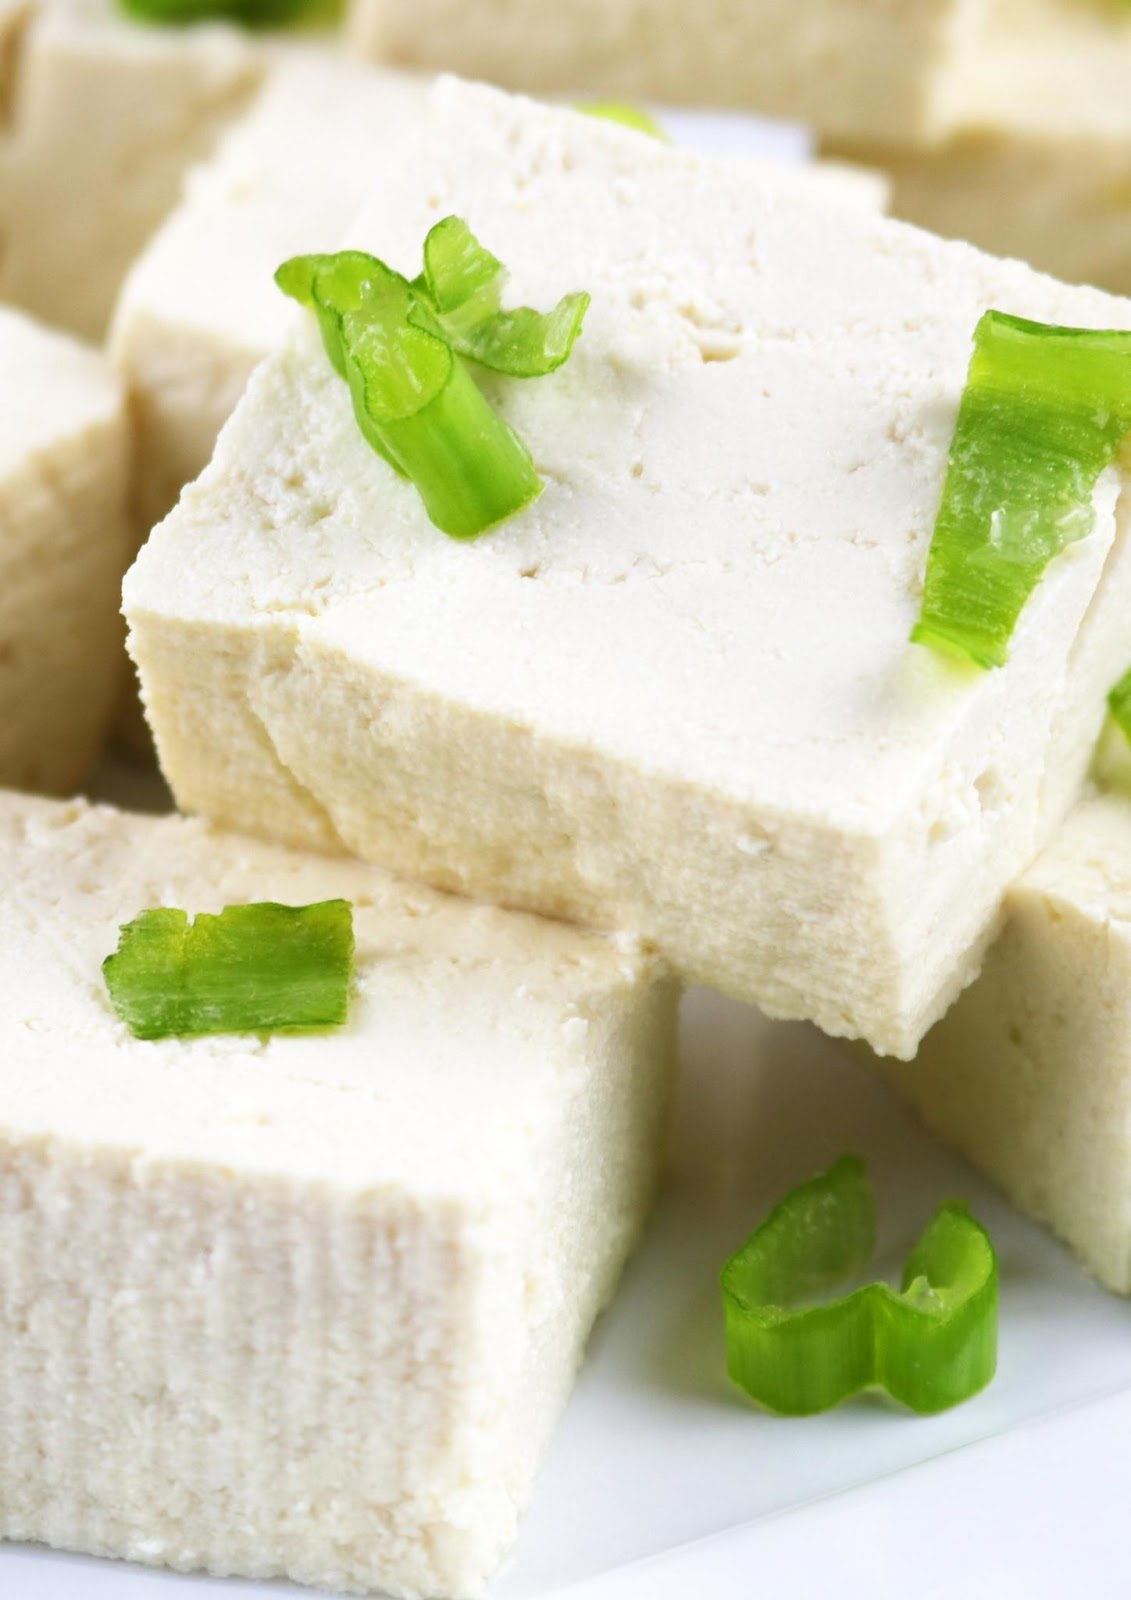 Tofu substitute for pancetta